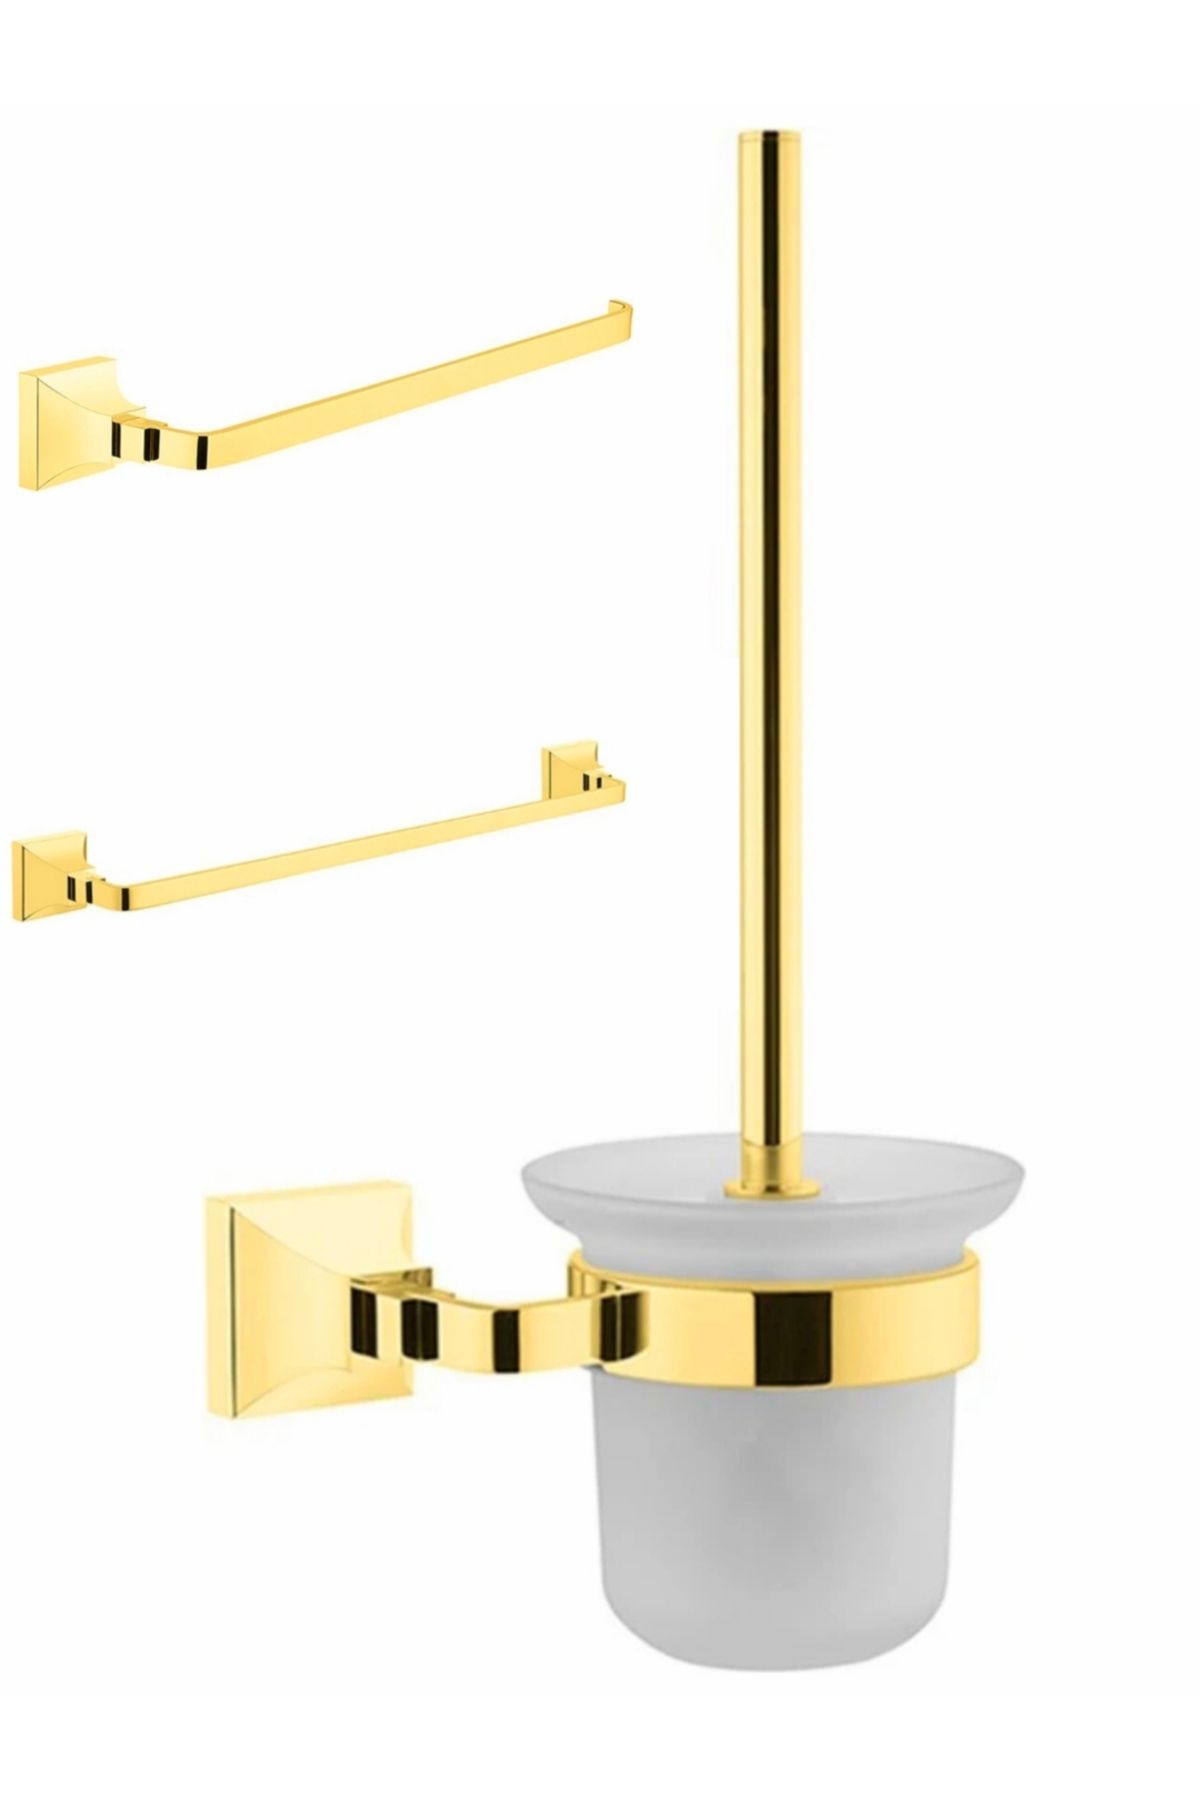 VitrA Elegance Altın 3'lü Banyo Seti - 2 adet Altın Havluluk + 1 adet Altın Tuvalet Fırçalığı